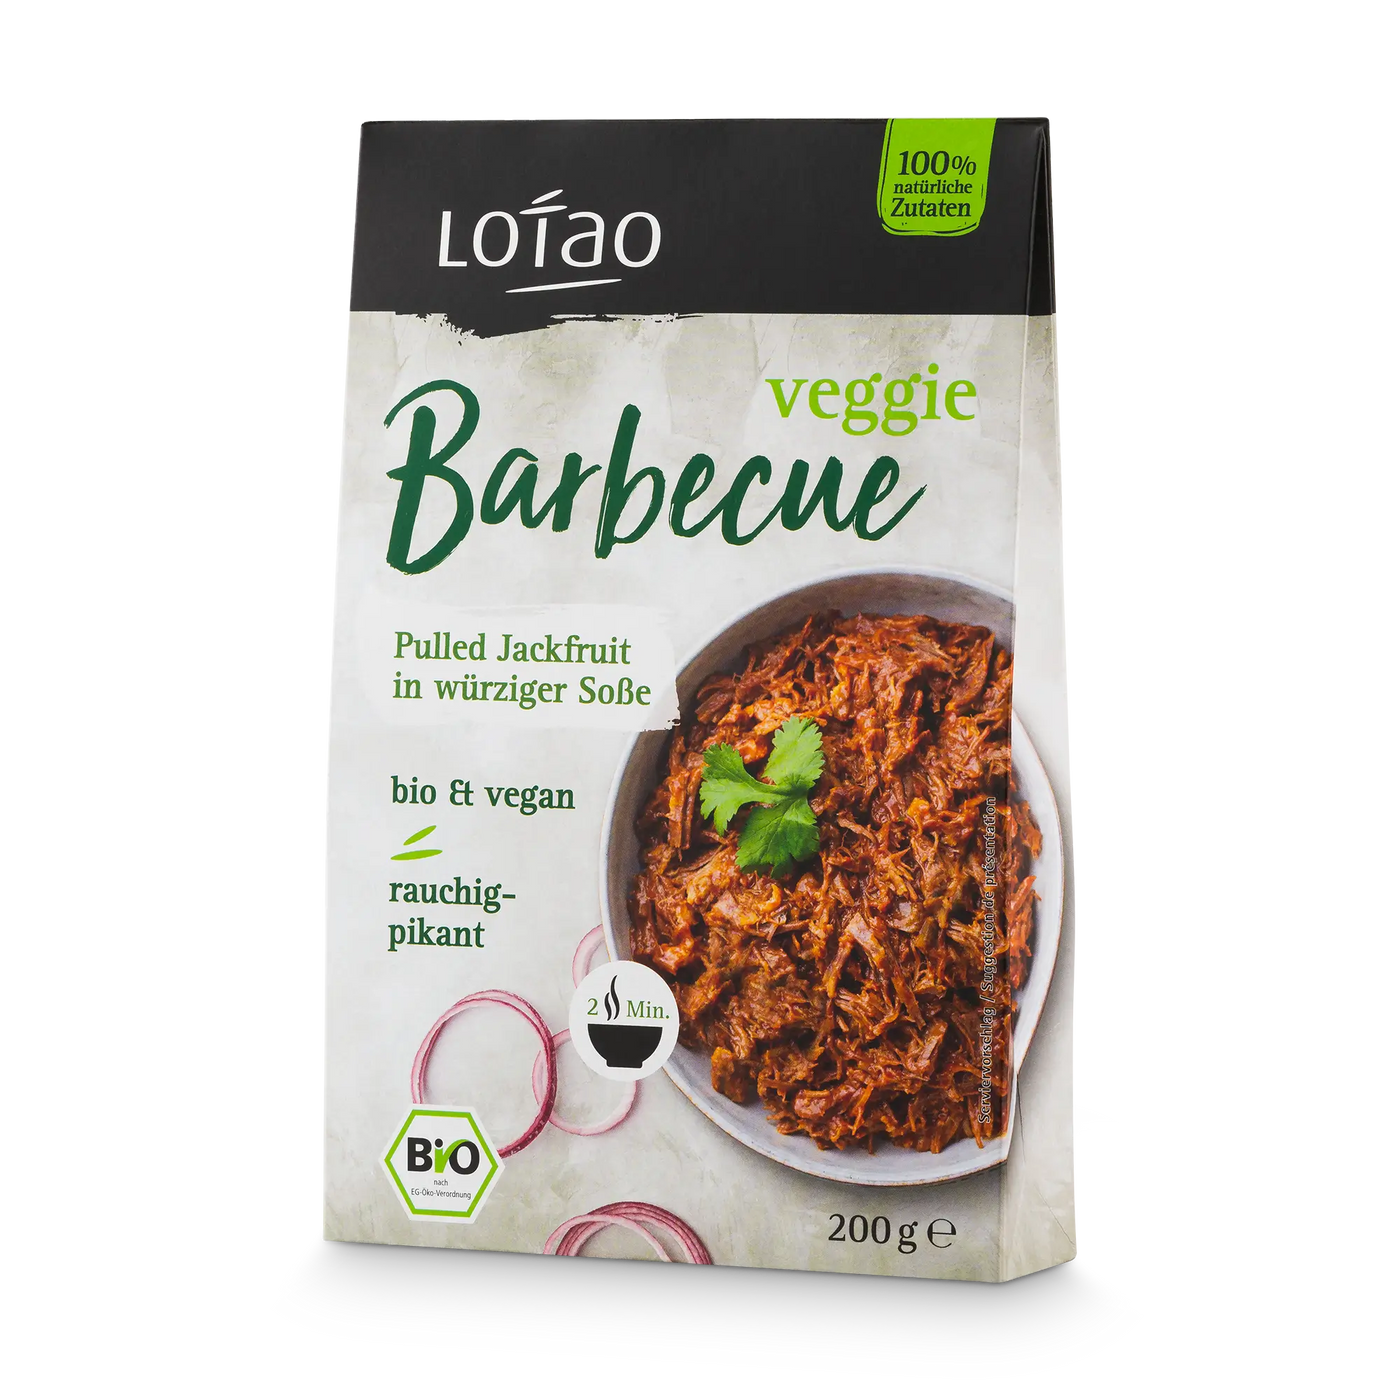 Das Lotao Veggie Barbecue ist Pulled Jackfruit in würziger Sauce. Der bio-vegane Fleischersatz schmeckt rauchig pikant und ist im 200g Paket erhältlich.